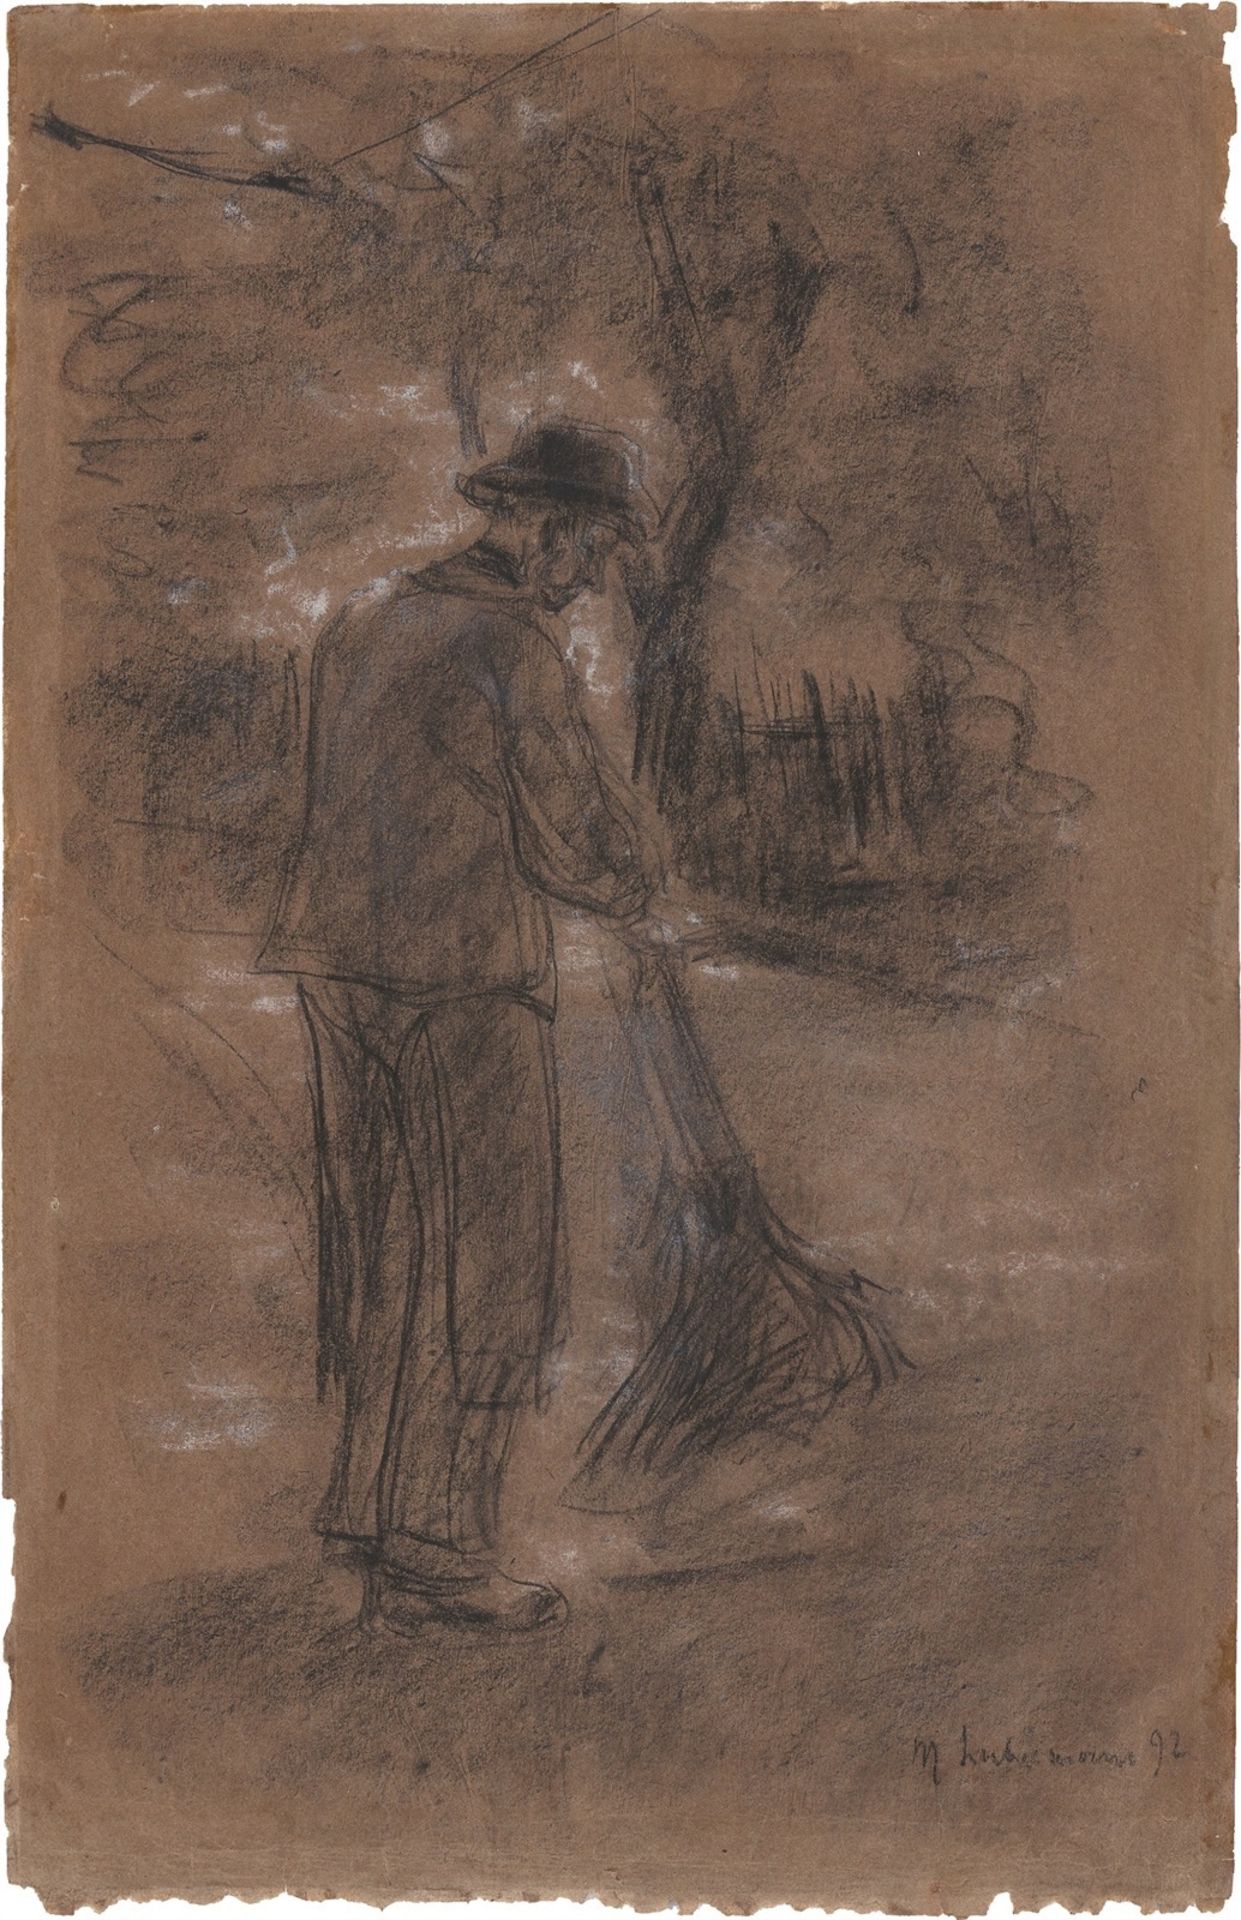 Max Liebermann. ”Der Straßenkehrer”. 1892